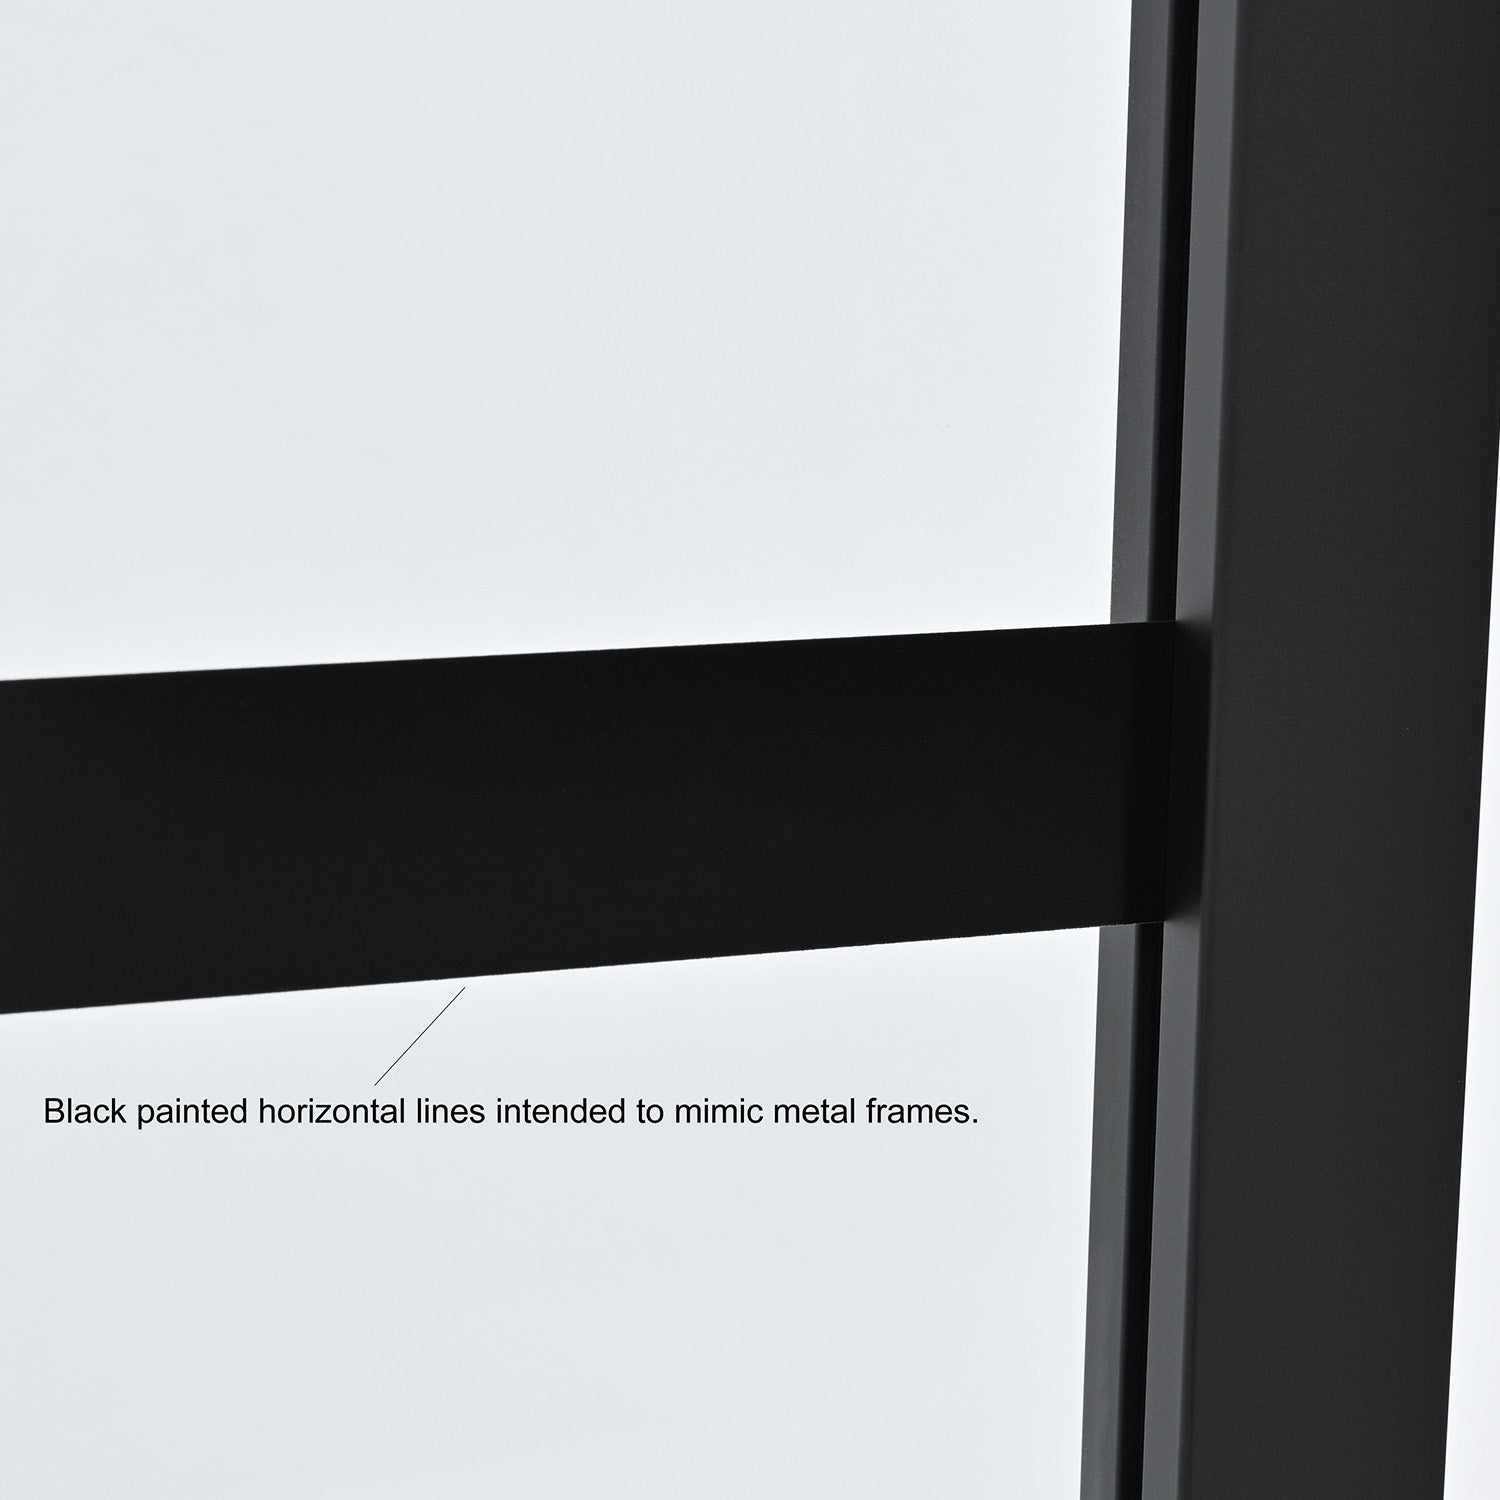 Vinnova Design Puerto 34" W x 74" H Framed Fixed Glass Panel in Matte Black - New Star Living